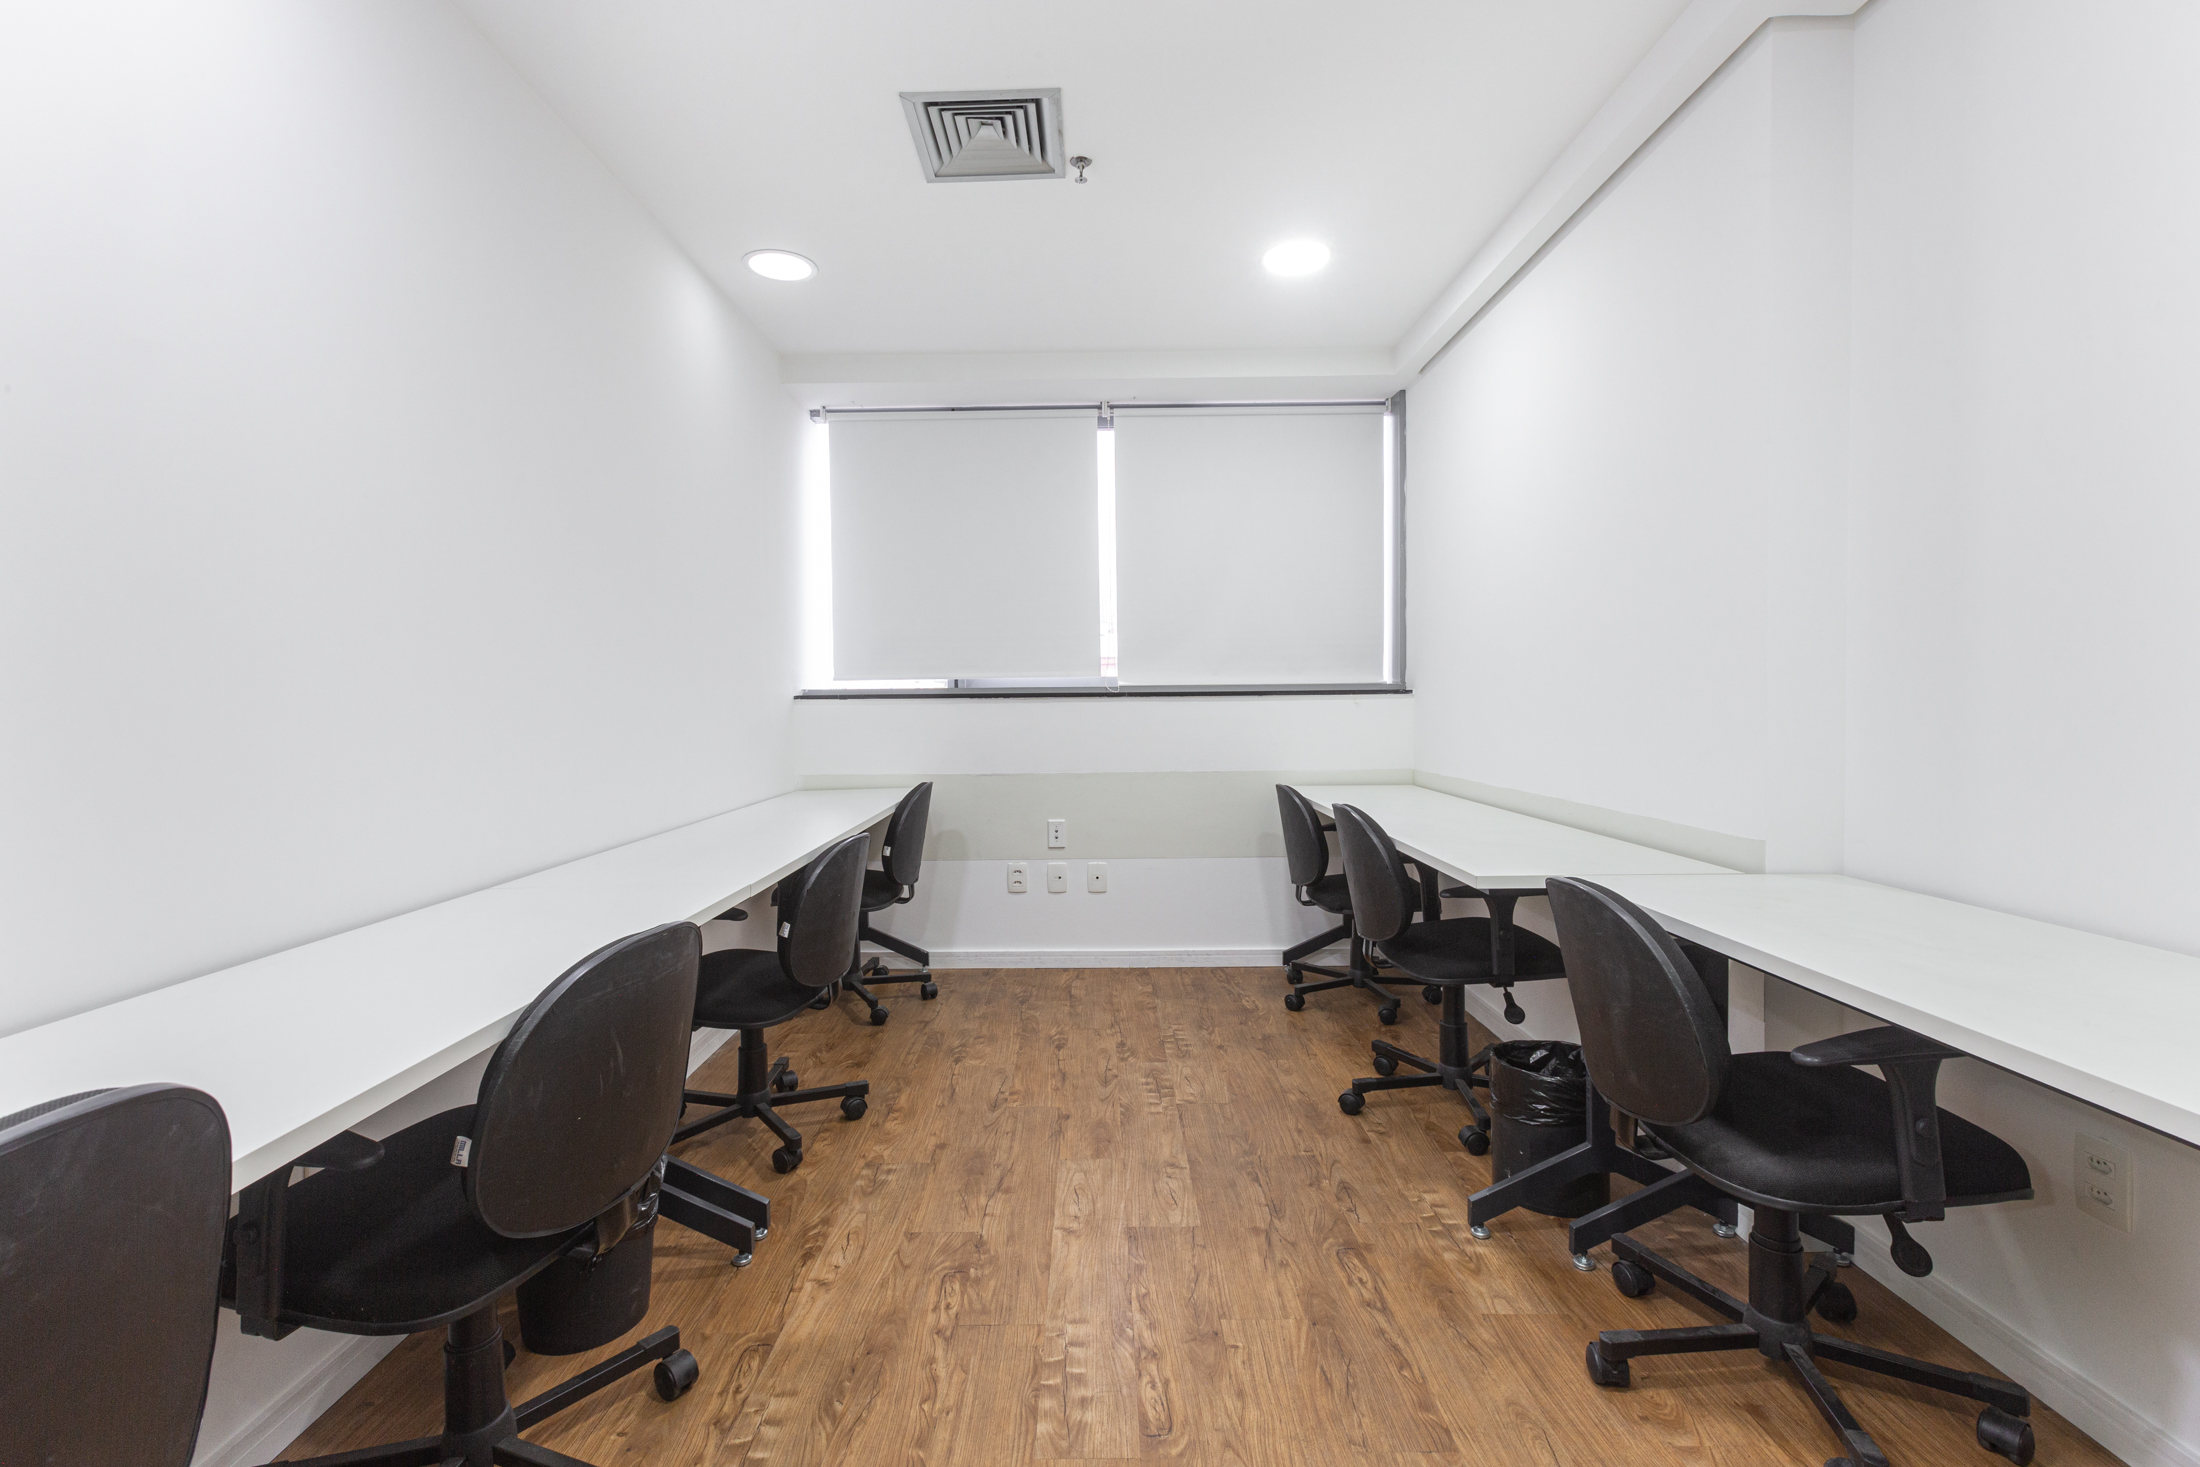 Sala privativa para várias pessoas na BSR: a rotatividade de lugares em um coworking gera grande economia para as empresas